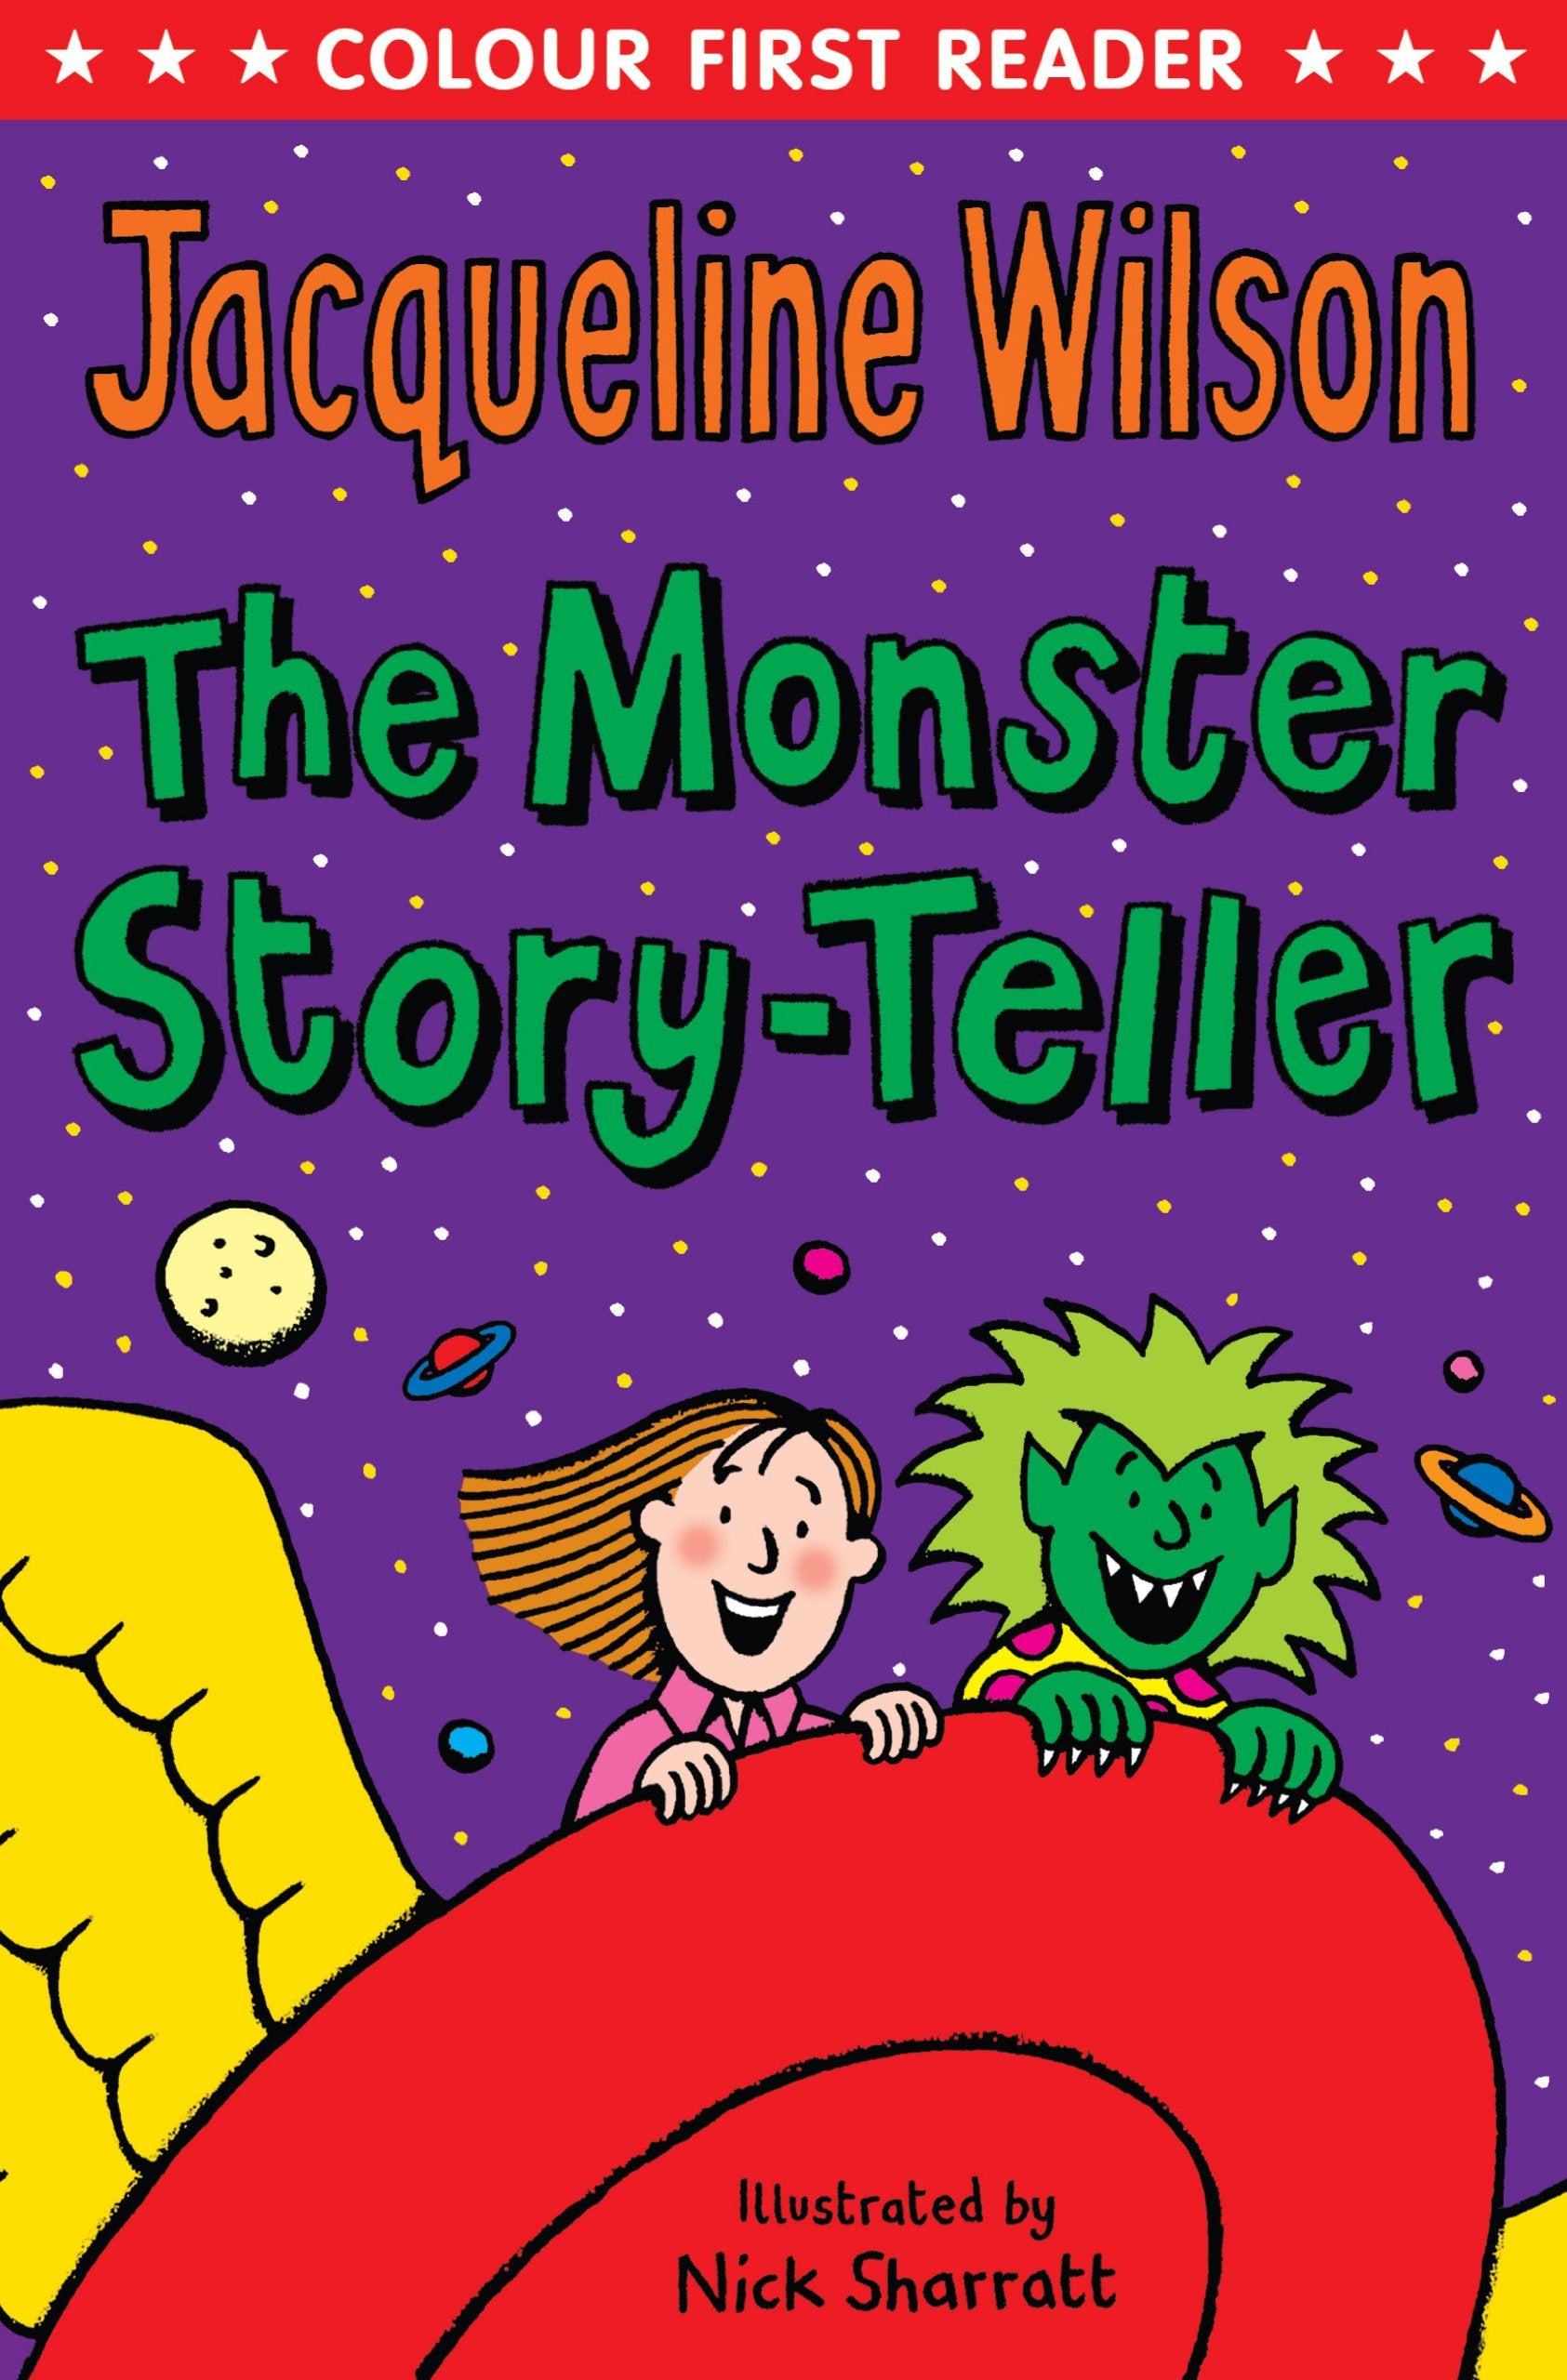 The Monster Story-Teller by Jacqueline Wilson